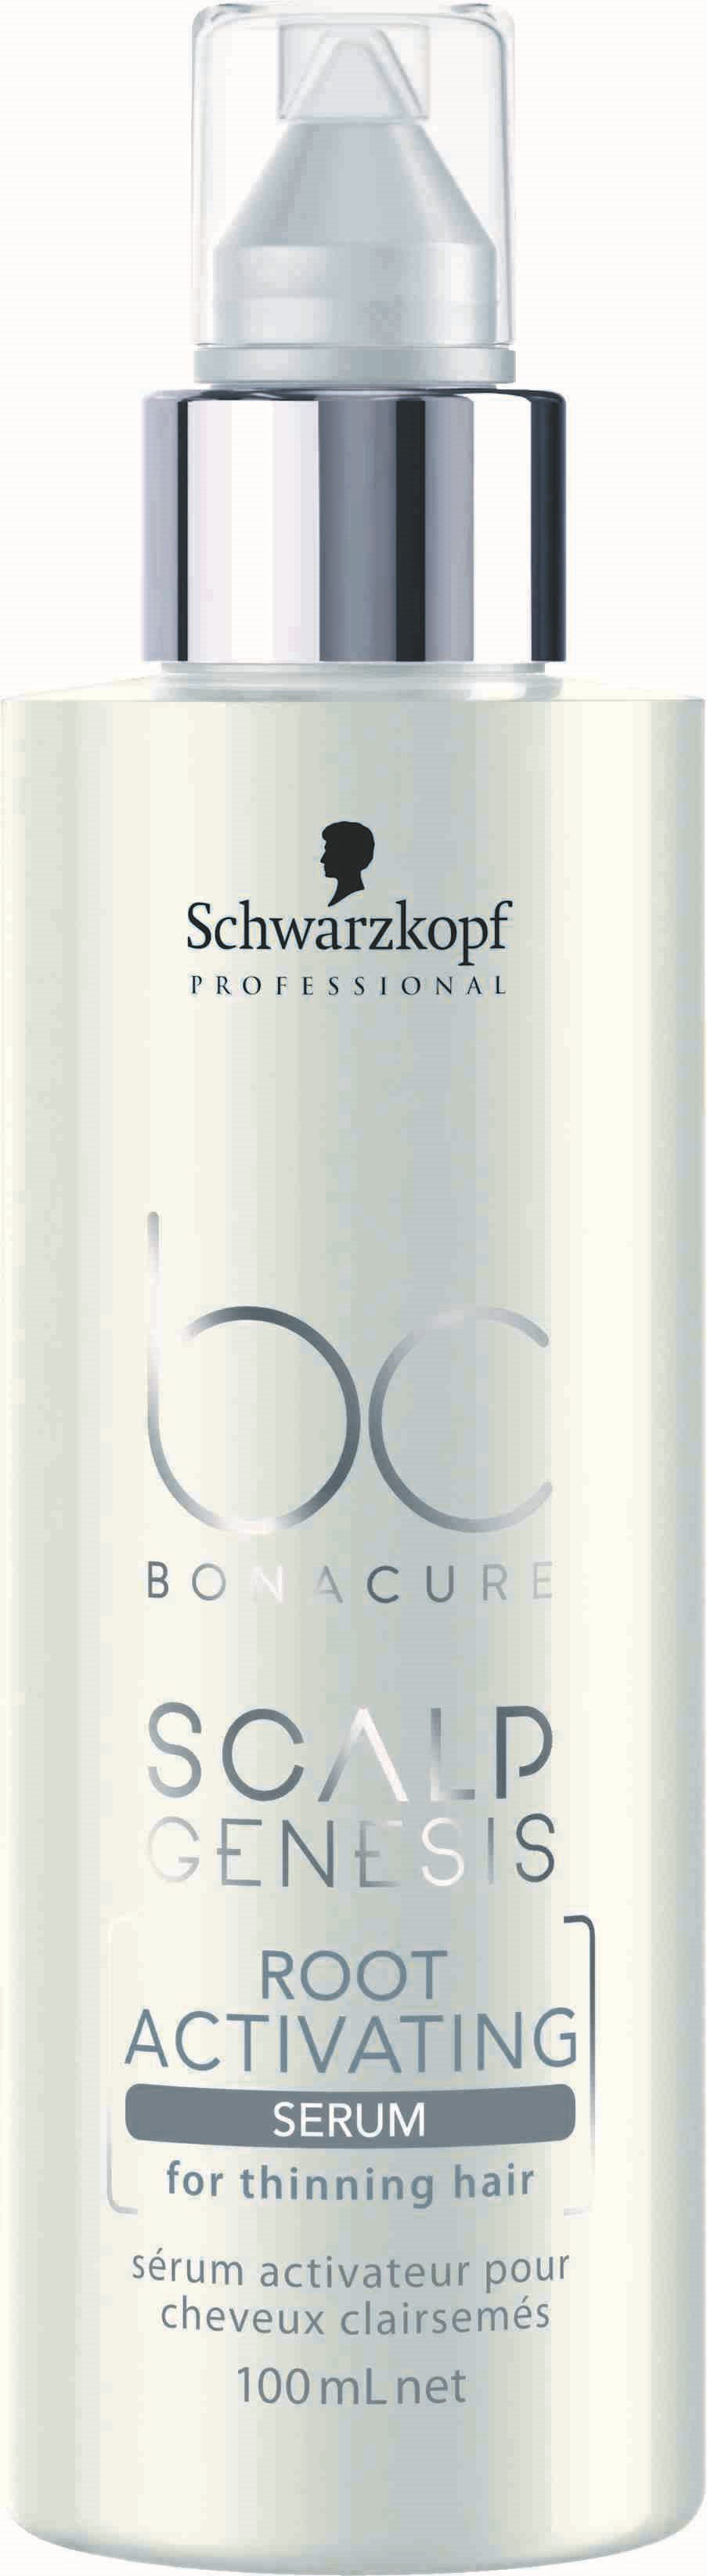 BonaCure Scalp Genesis Root Activating Serum Beauty Plaza